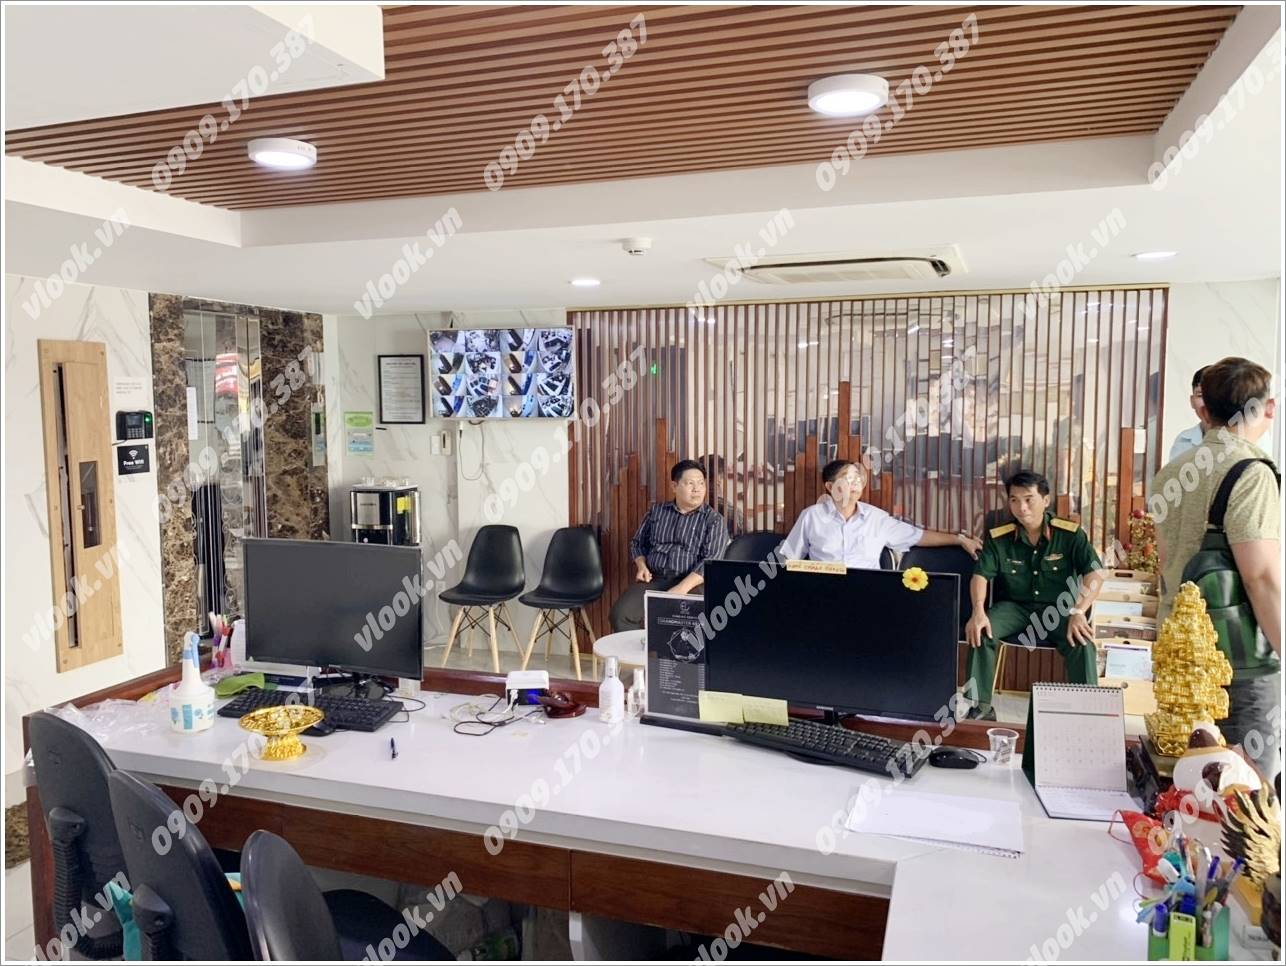 Cao ốc văn phòng cho thuê Sabay Office Trần Huy Liệu, Quận Phú Nhuận, TP.HCM - vlook.vn